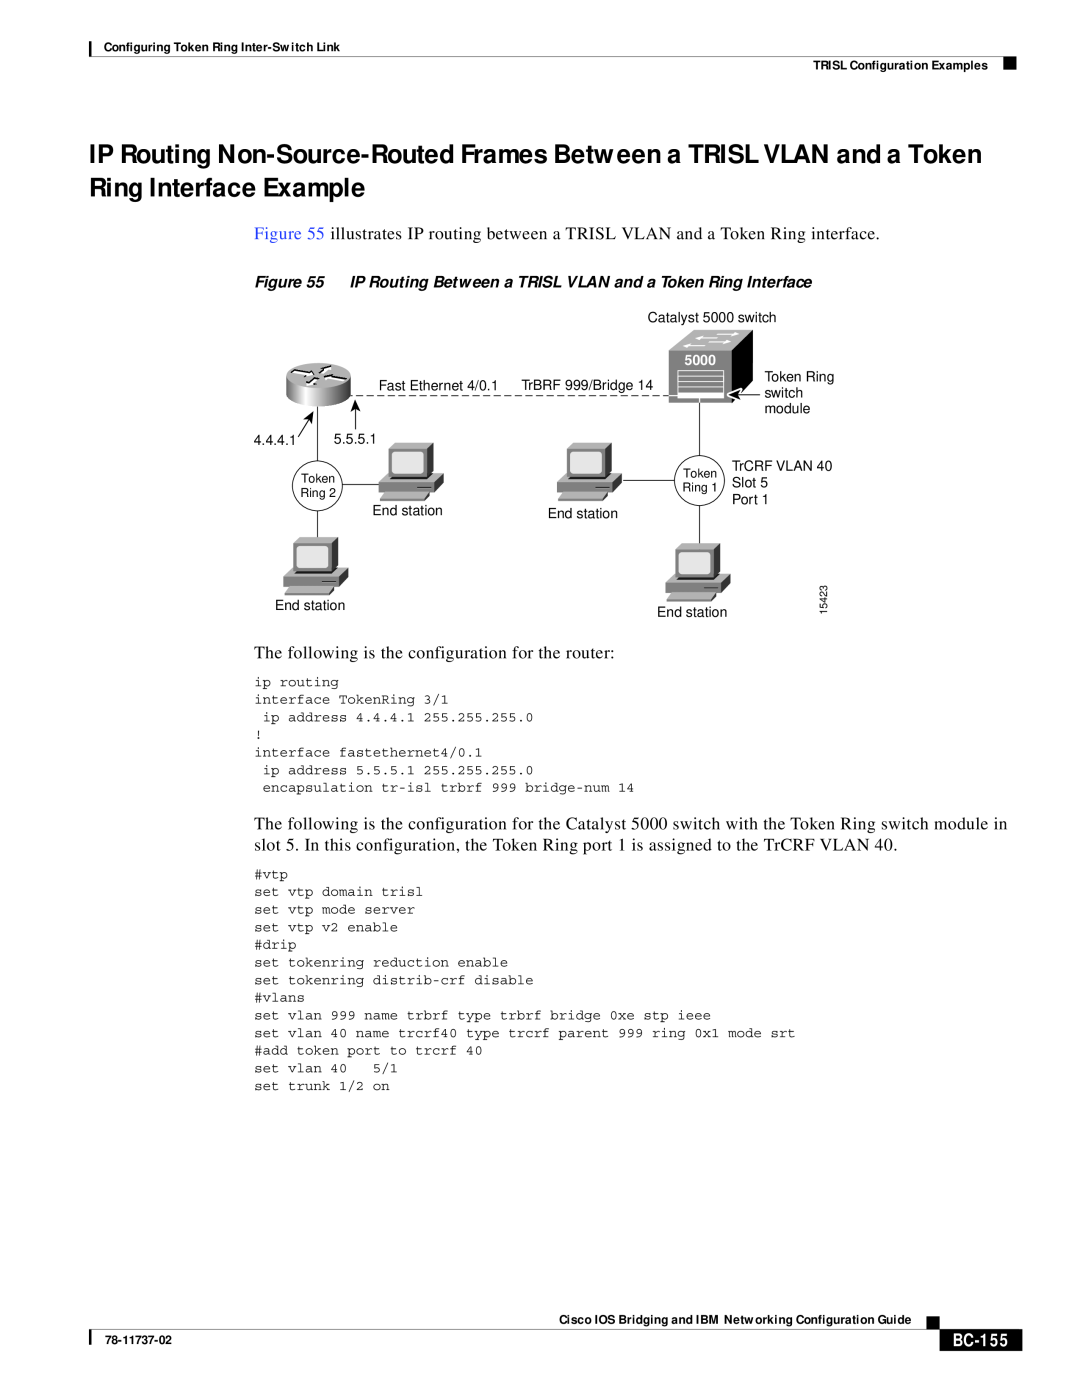 Cisco Systems BC-145 manual BC-155 